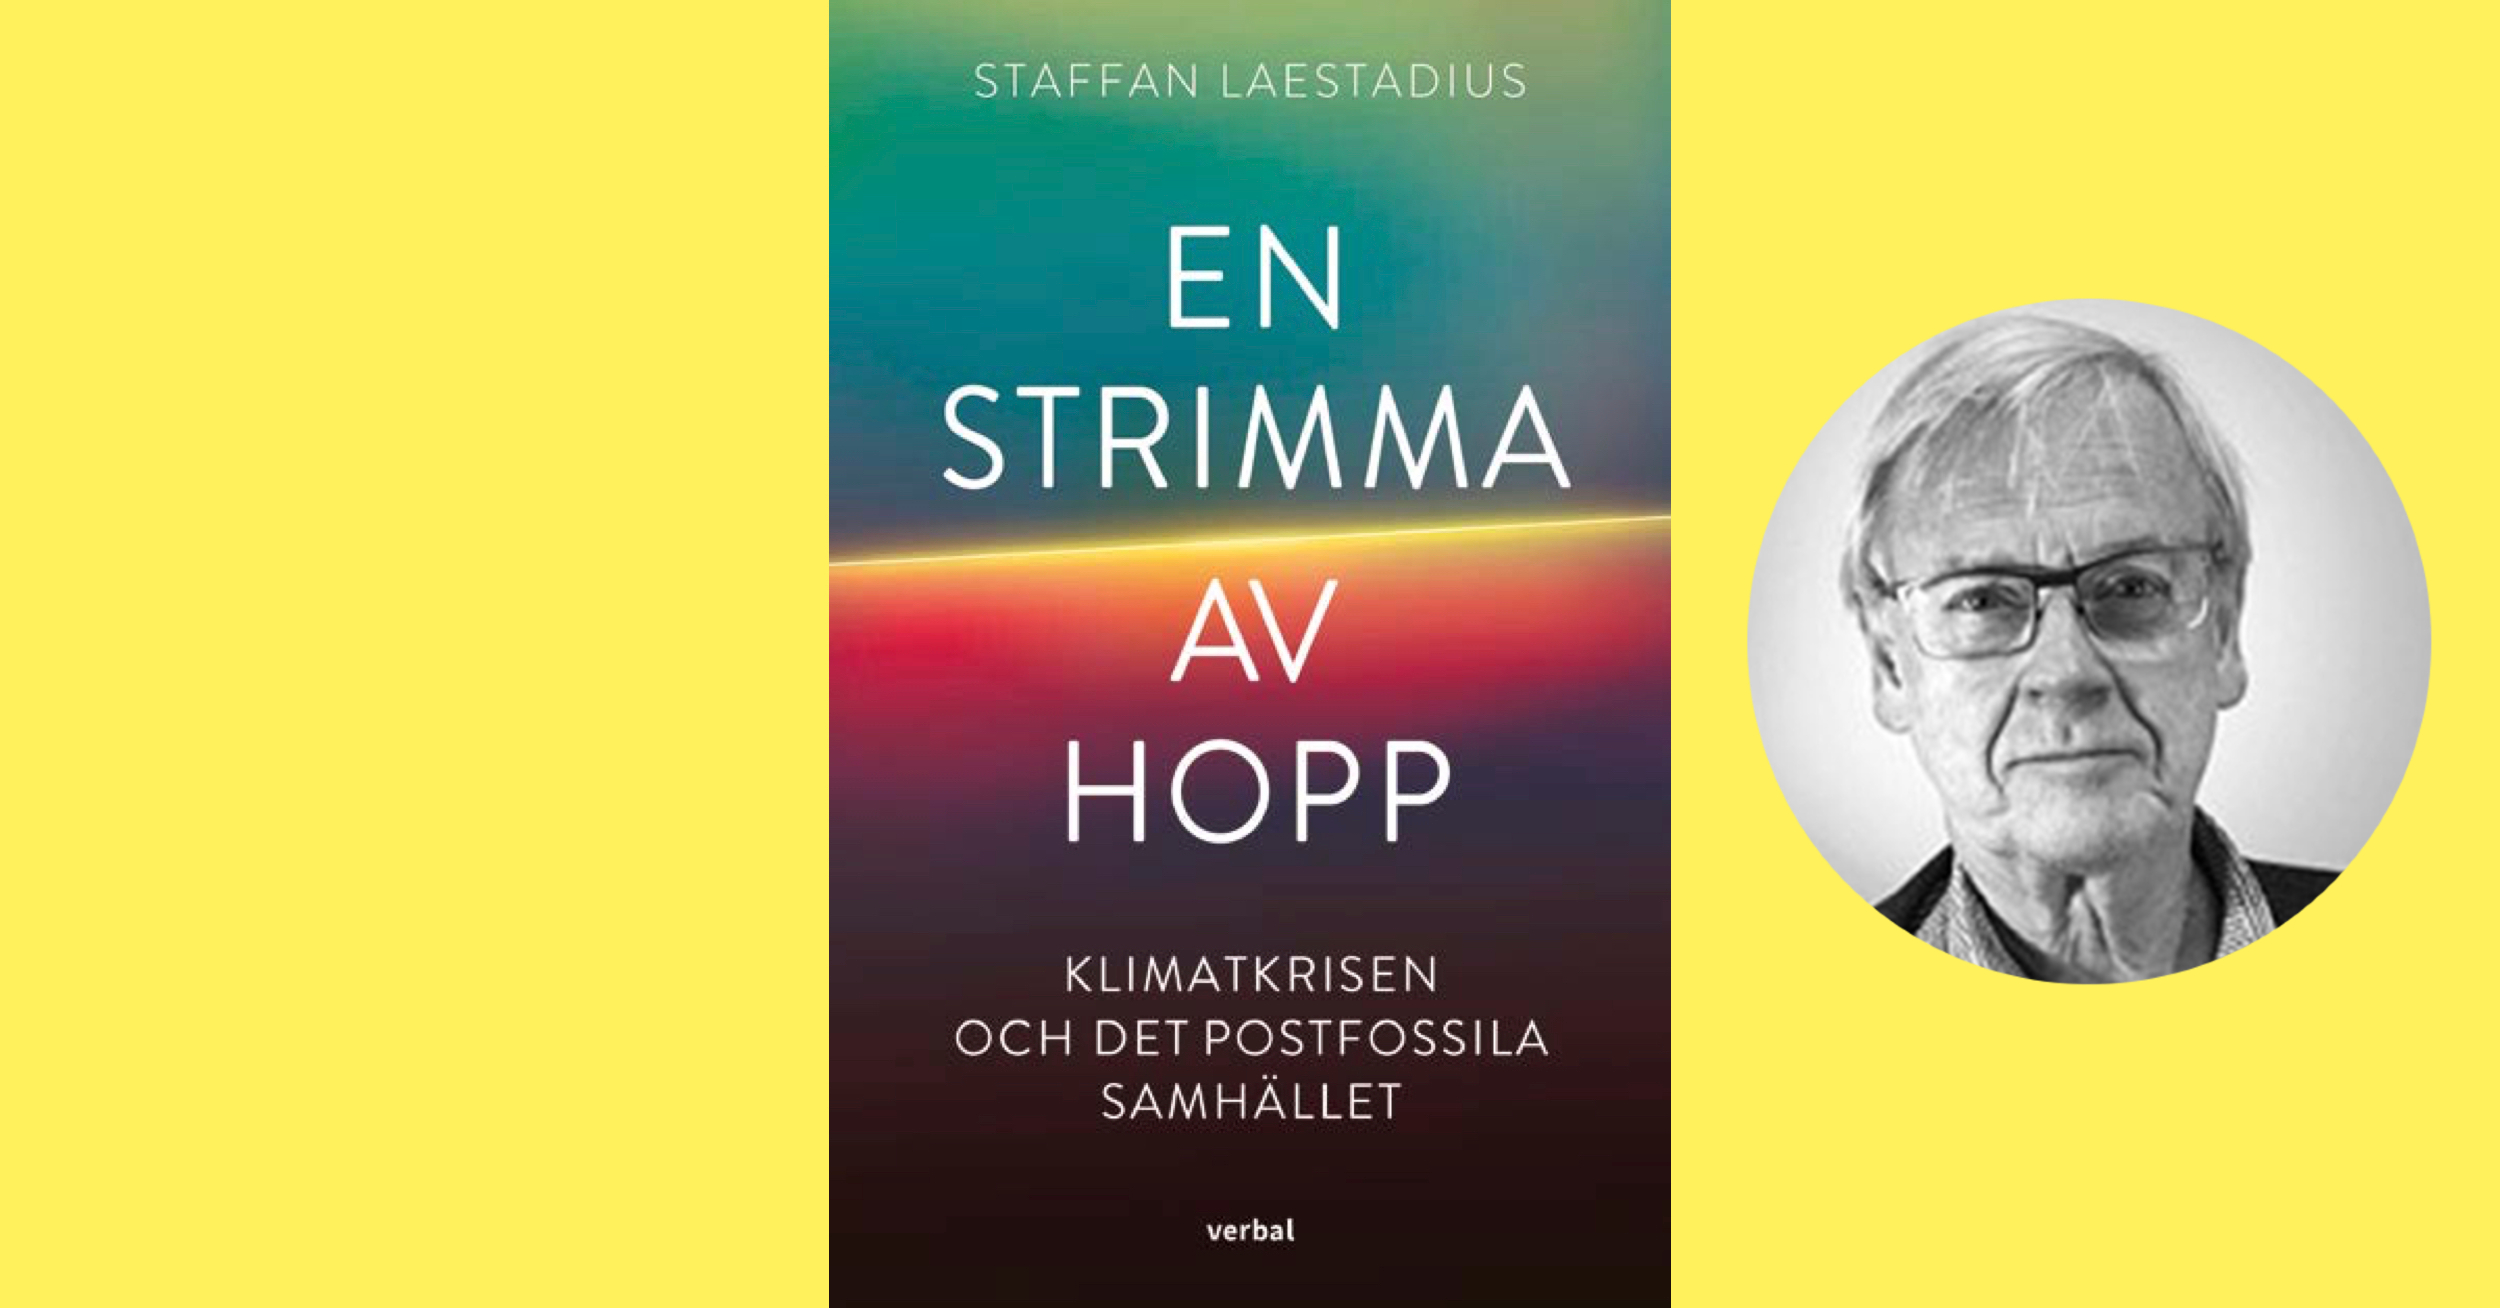 Intervju: Staffan Laestadius om boken ”En strimma av hopp”